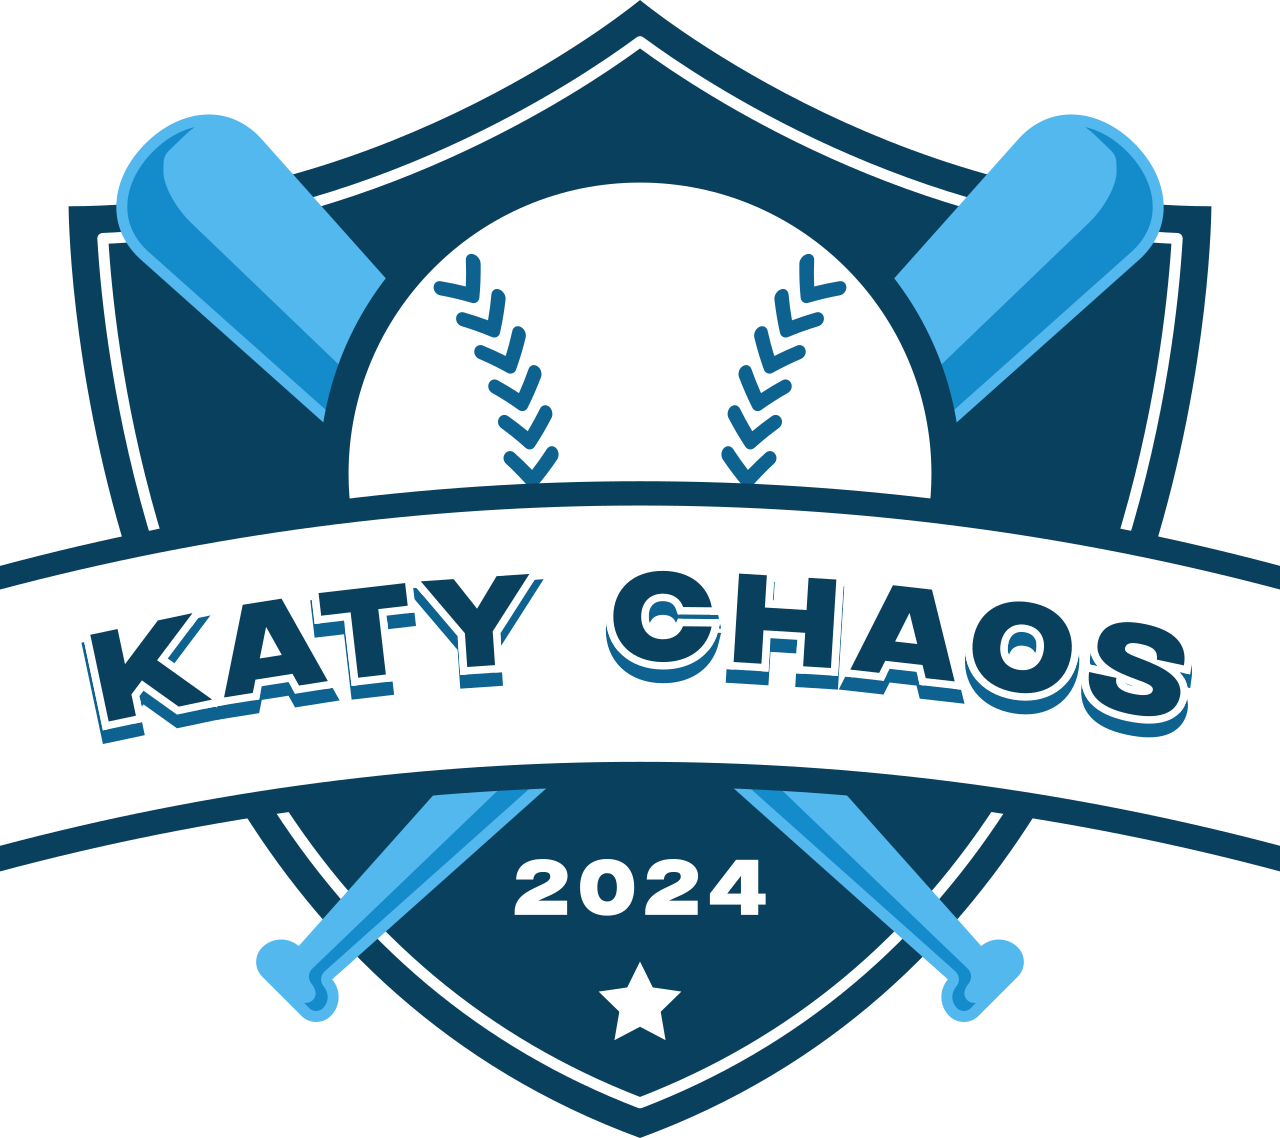 Katy CHAOS's logo